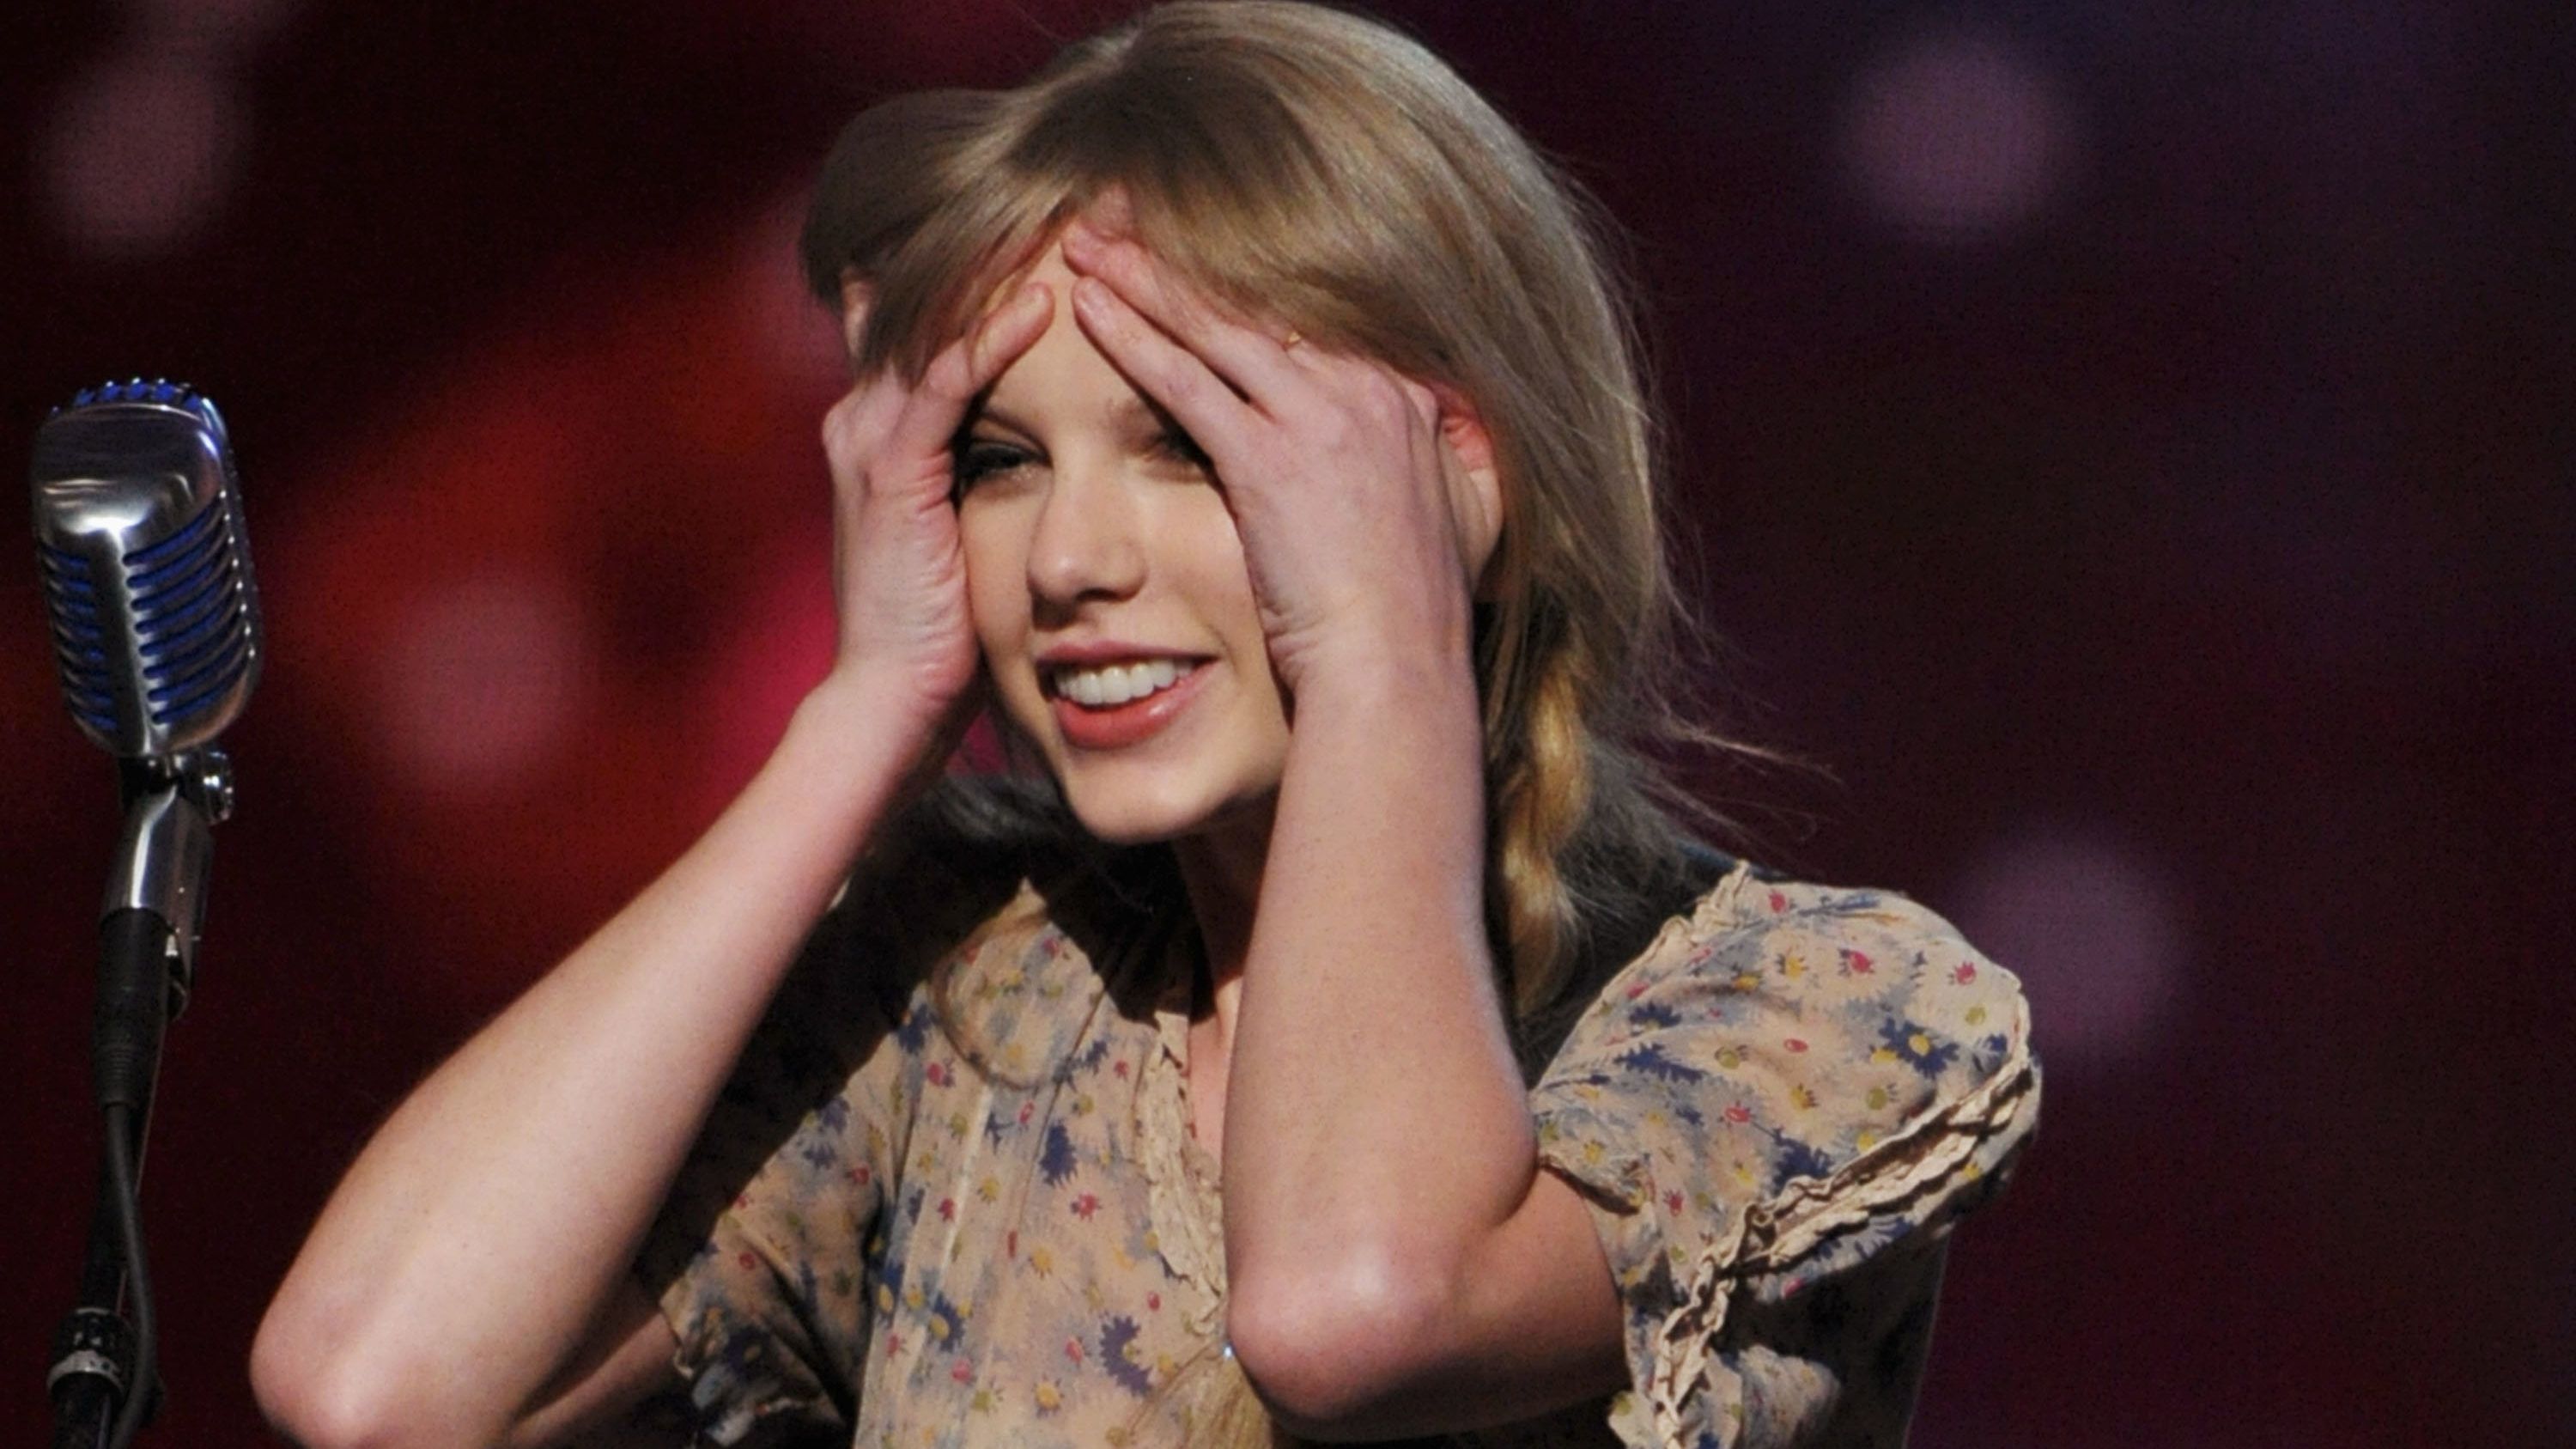 Nehéz nyelv az angol: Taylor Swift promópulcsiján van egy béna elírás